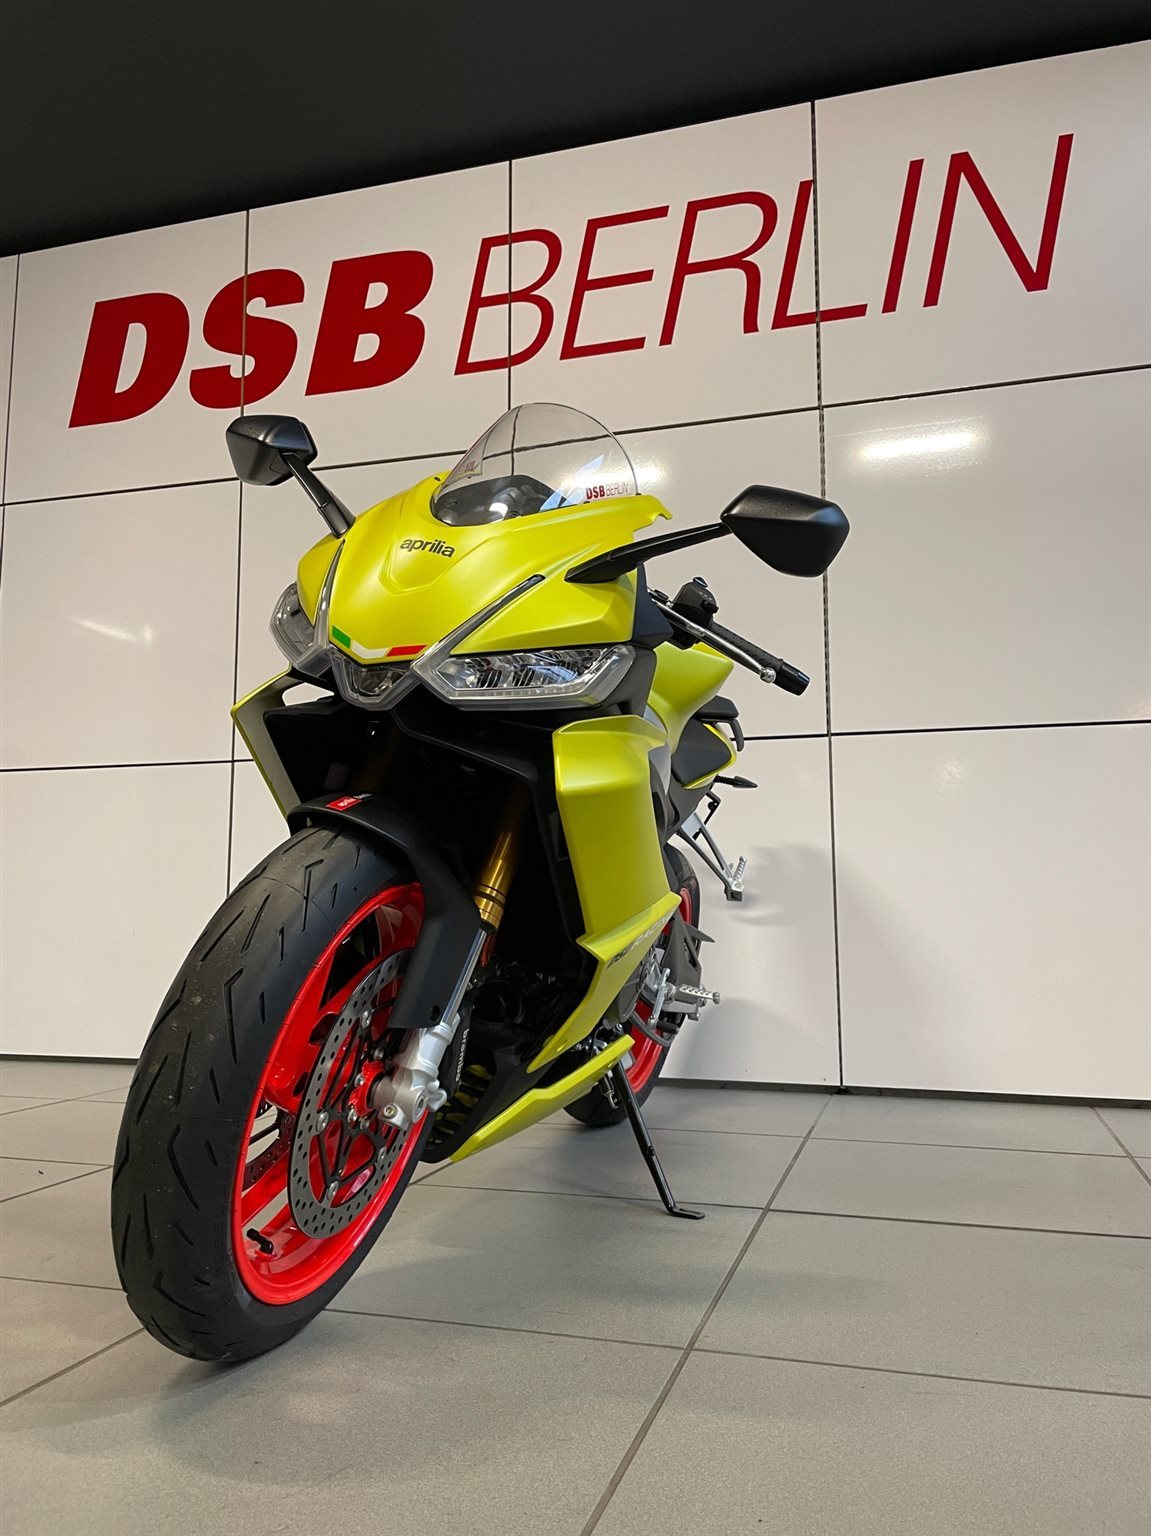 DSB Berlin – Aprilia Händler & Ducati Spezialist